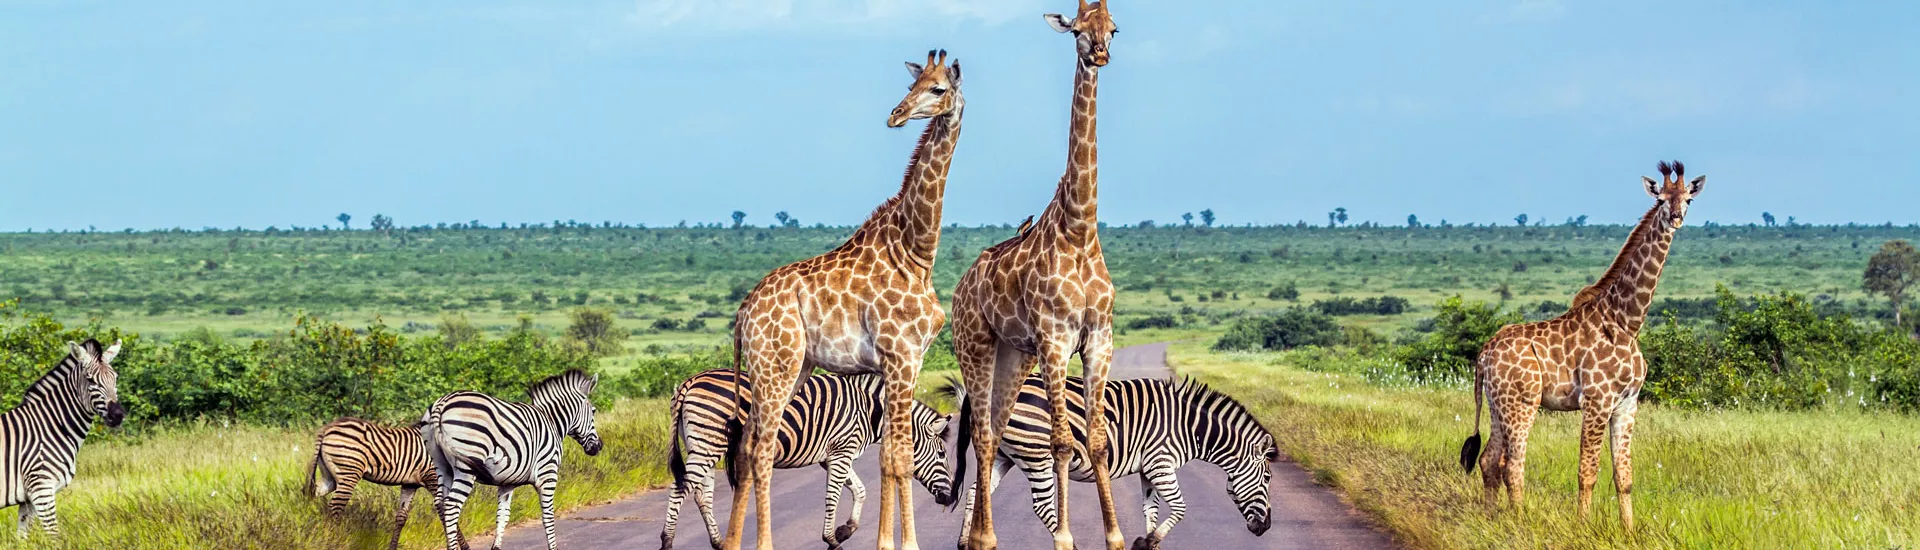 Giraffe und Zebra